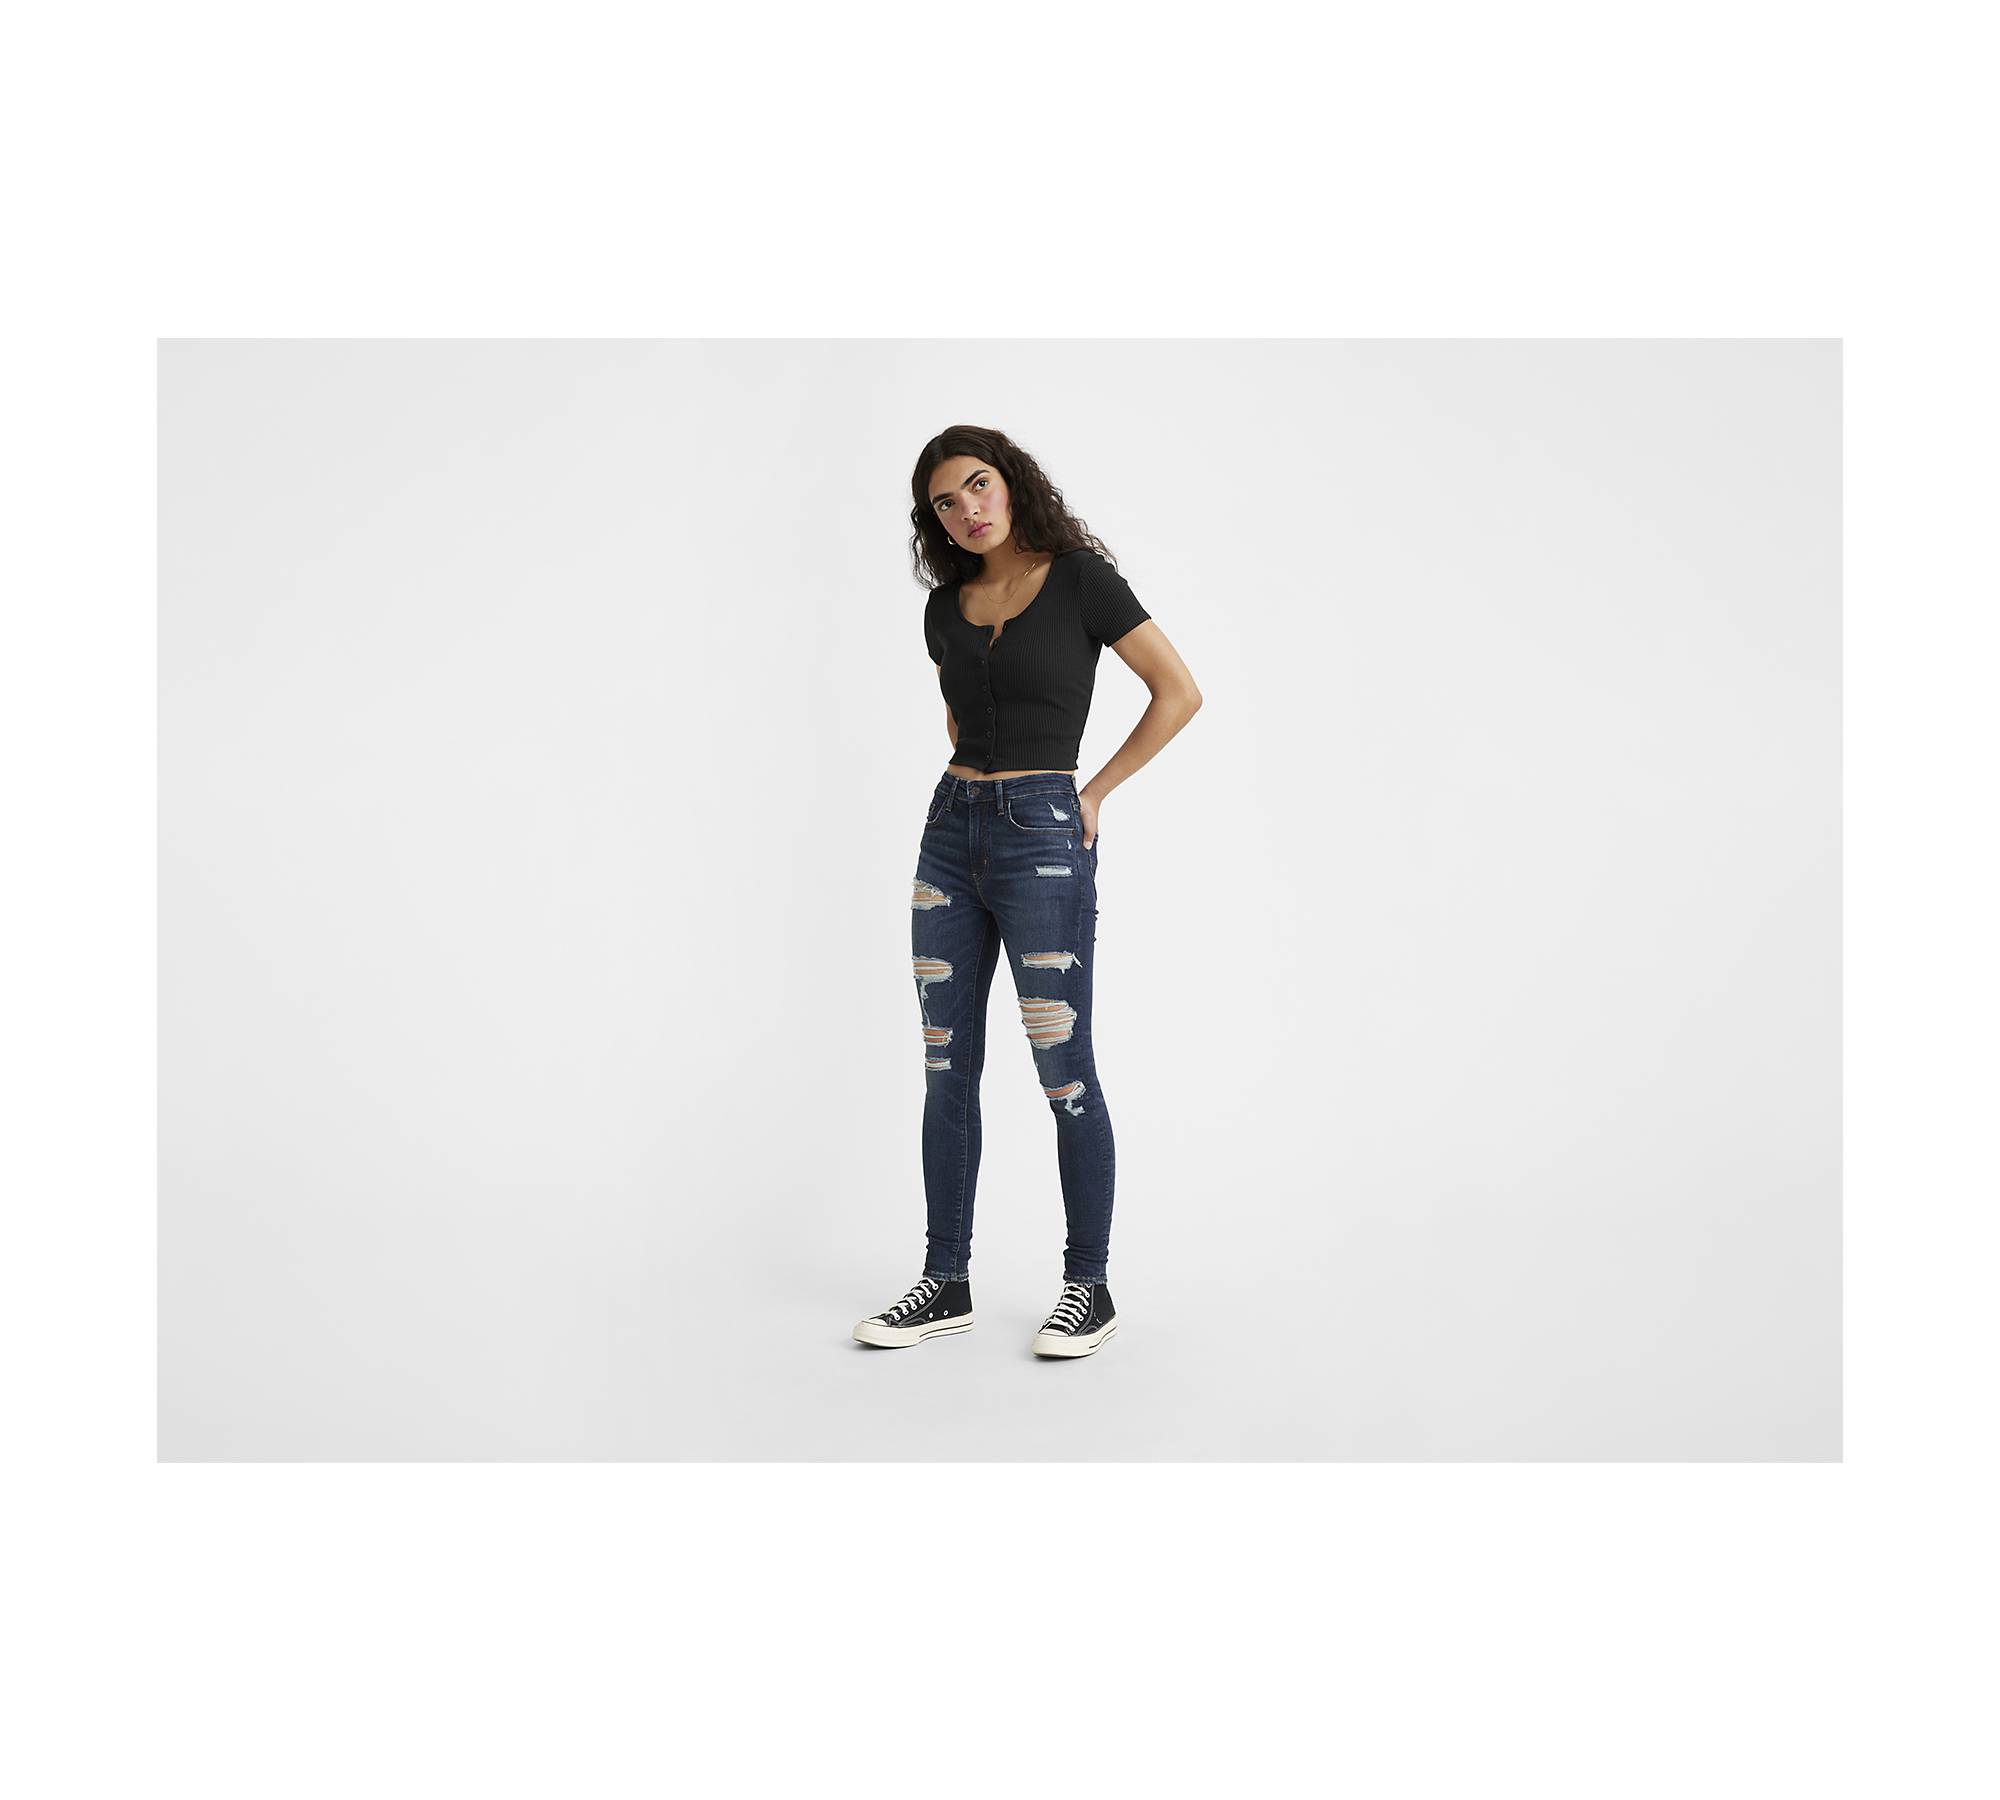 Super High-Rise Skinny Jean - Signature Soft - Curvy Fit, Regular